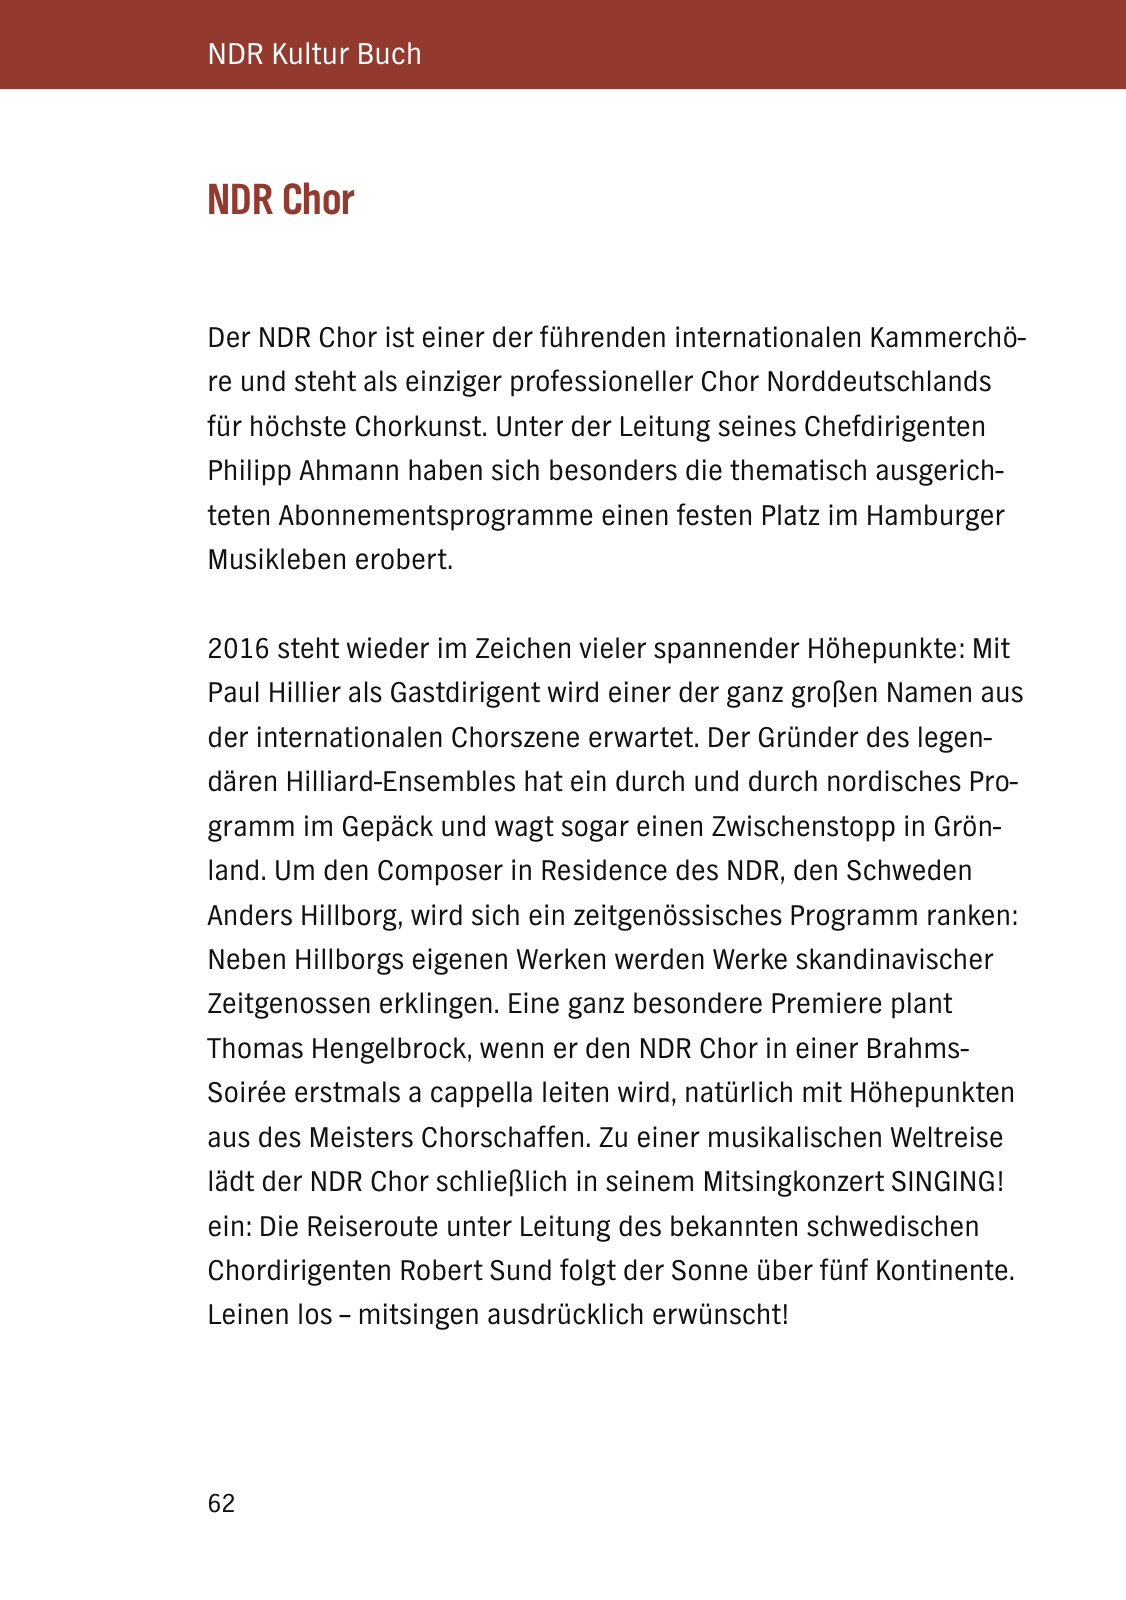 Vorschau NDR Kultur Buch 2016_aktualisiert Seite 64